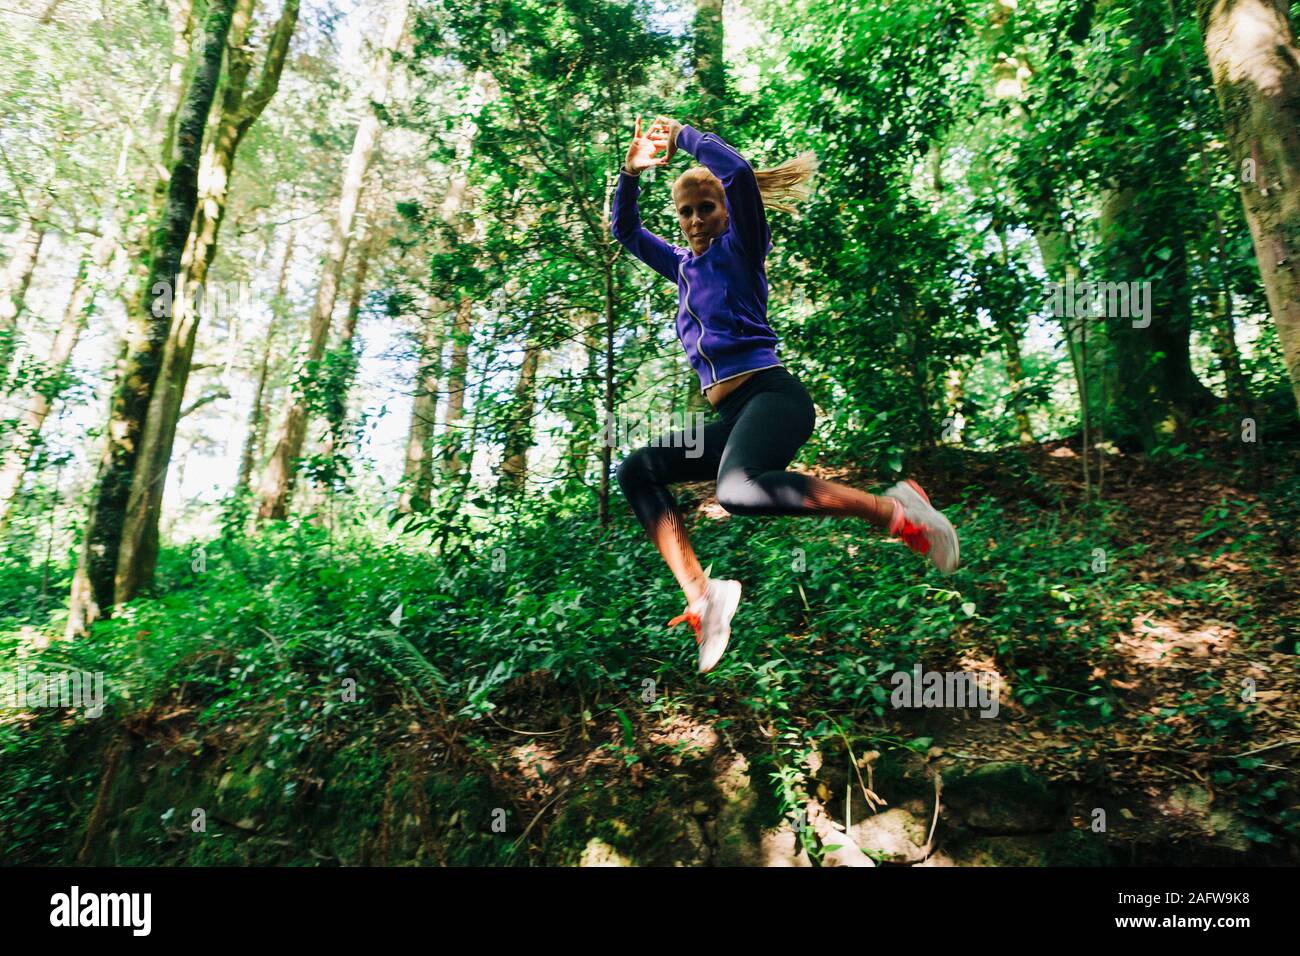 Carefree portrait femme entraîneur personnel de la randonnée, le saut dans l'aménagement forestier Banque D'Images